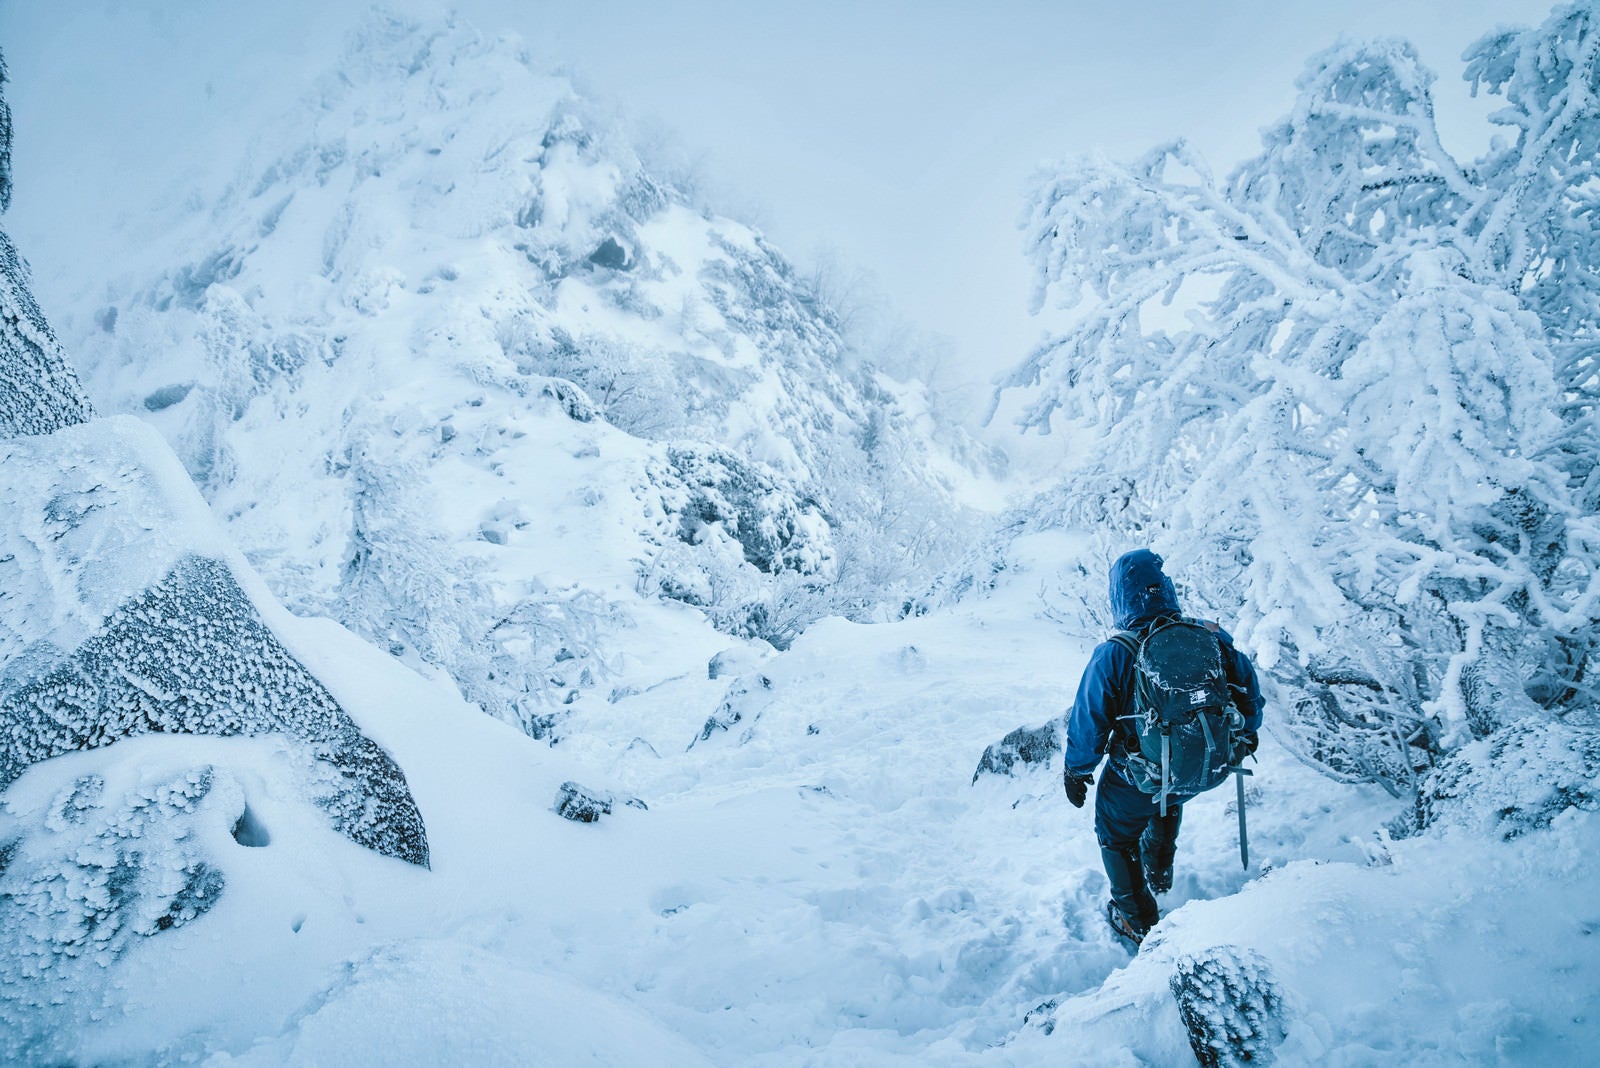 「吹雪く雪山を下山する登山者」の写真